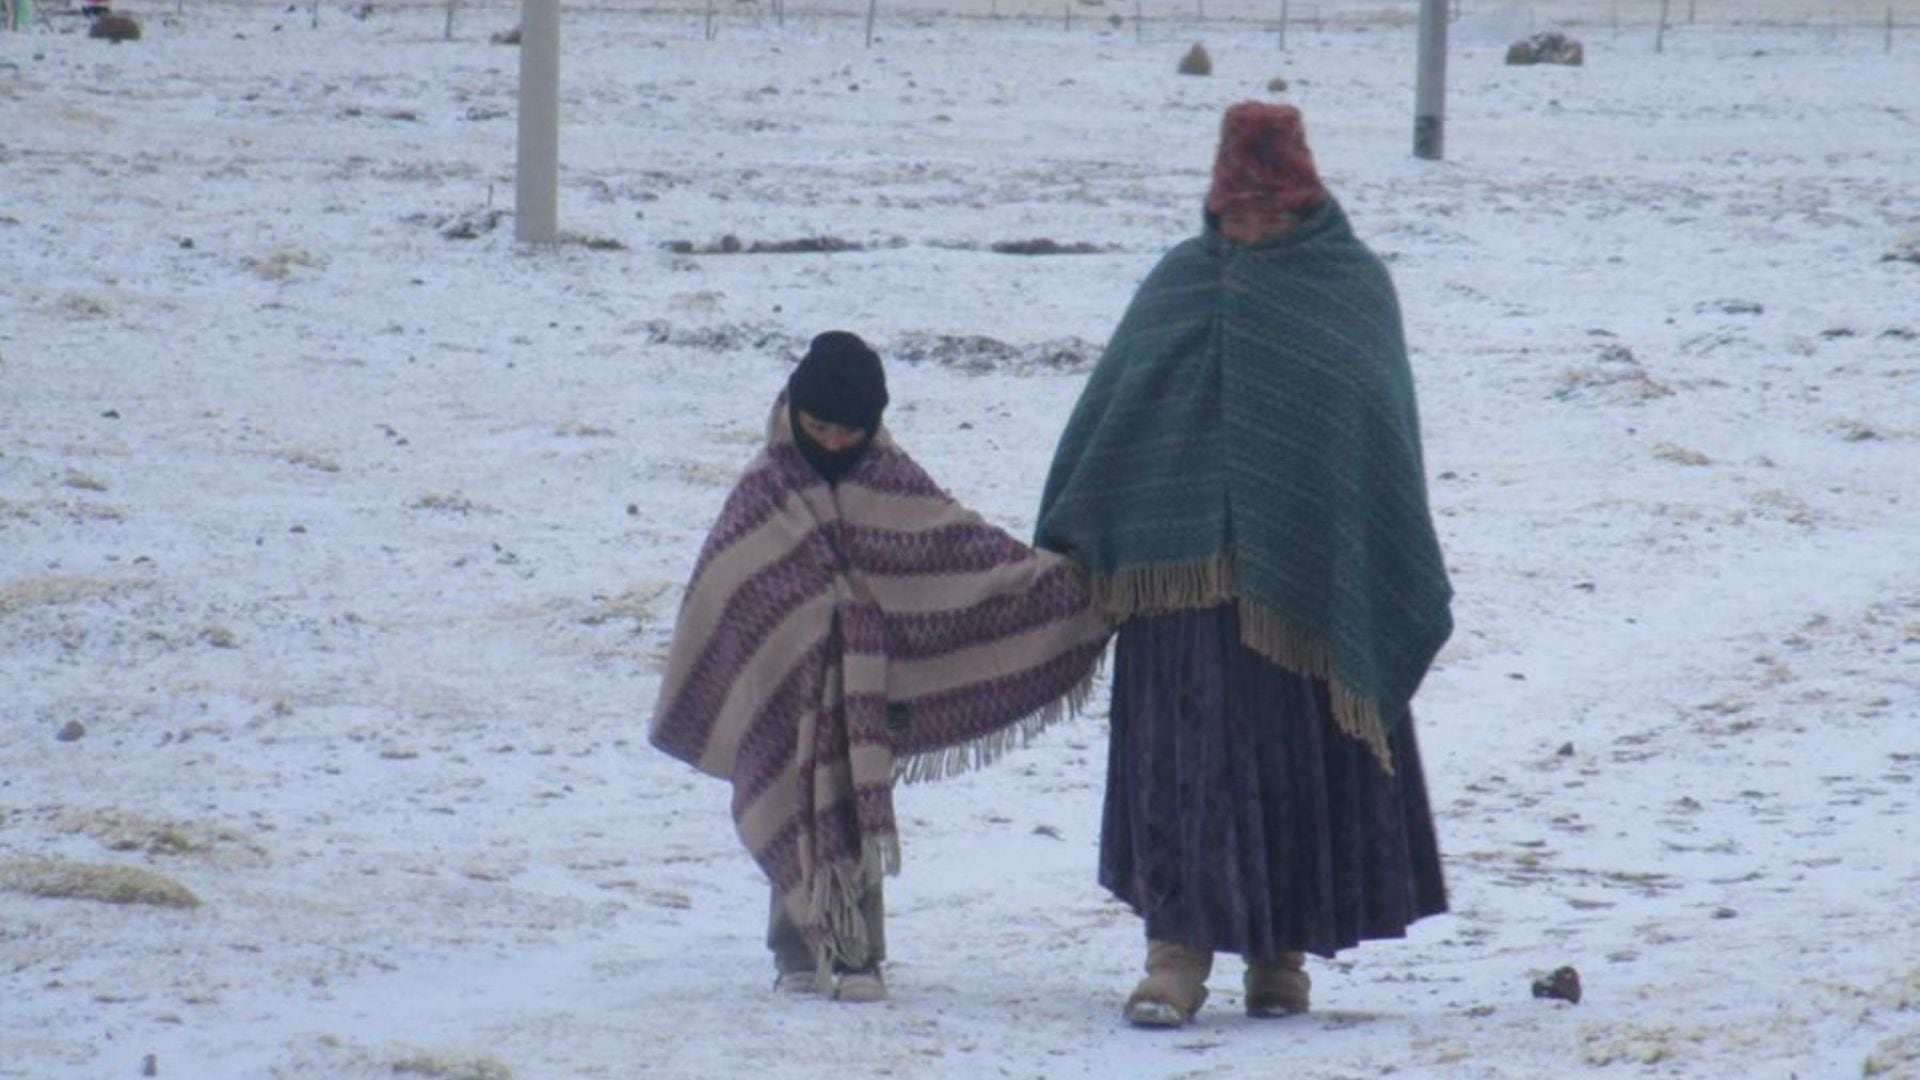 El frío causas distintas enfermedades que se presentan después de cuatros días, a diferencia de un golpe de calor con efectos casi inmediatos. (Agencia Andina).